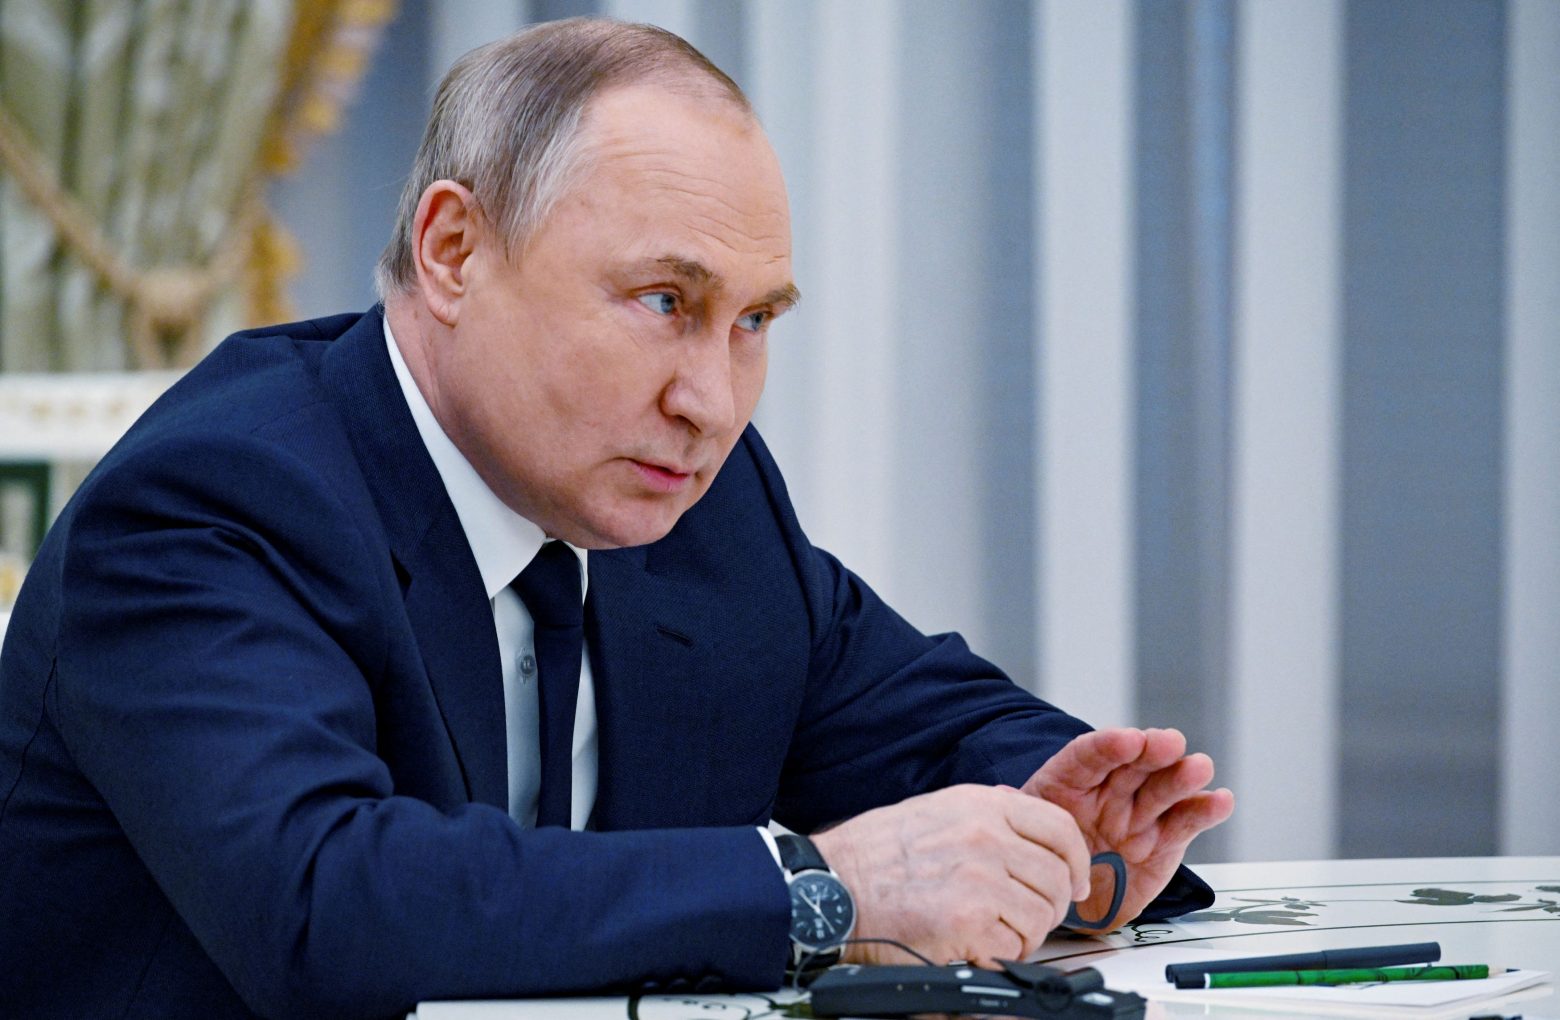 Πούτιν: «Όλοι οι στόχοι στην Ουκρανία θα επιτευχθούν» - Απείλησε με αντίποινα τις χώρες που θα παρέμβουν